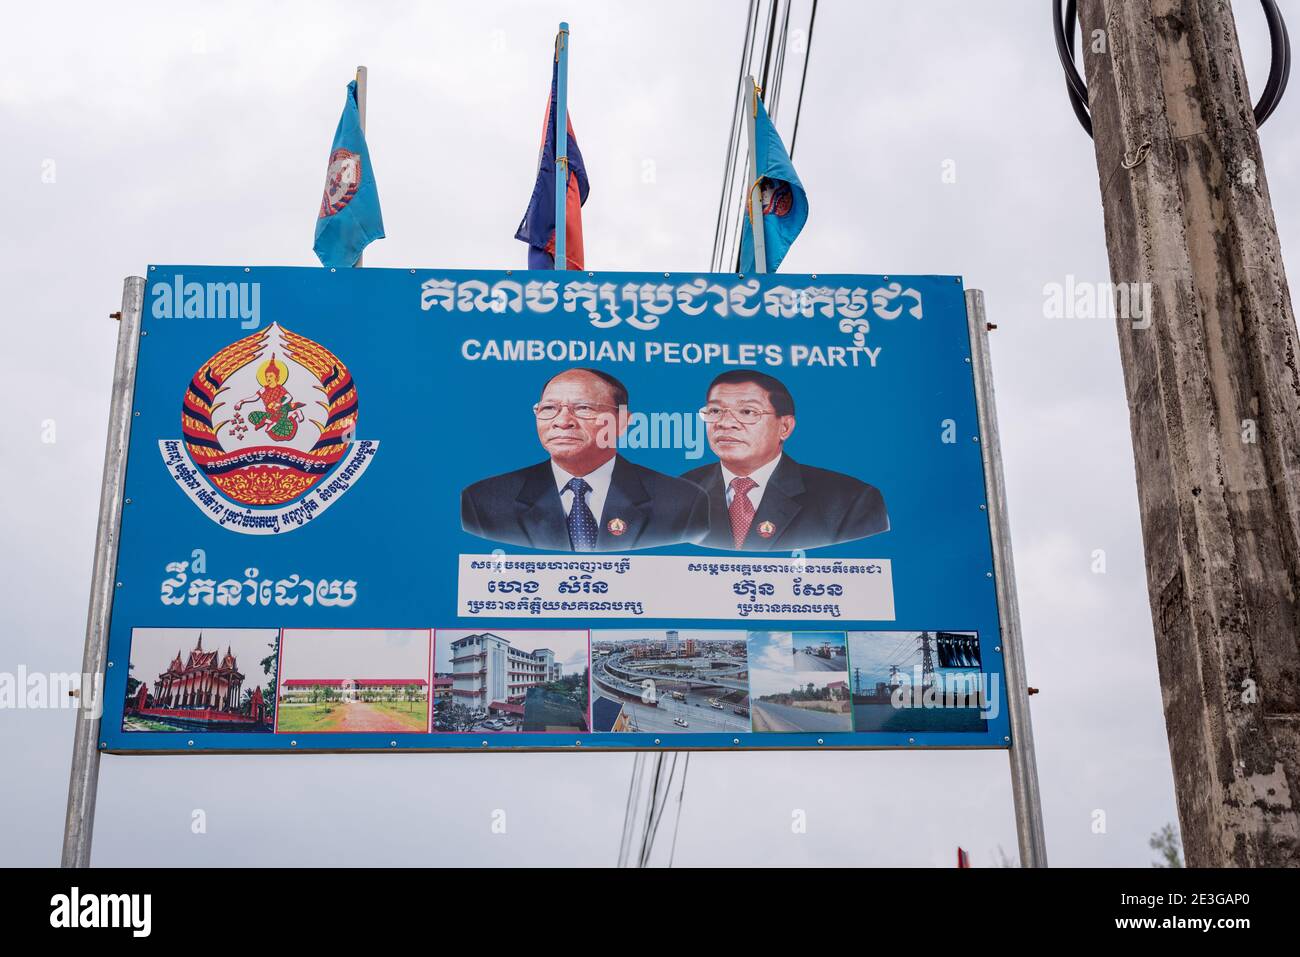 Plakat der kambodschanischen Volkspartei mit politischen Führern (Heng Samrin auf der linken Seite und Hun Sen), auf dem sie am 13. Dezember 2016 in Kampot, Kambodscha, abgebildet ist. Stockfoto